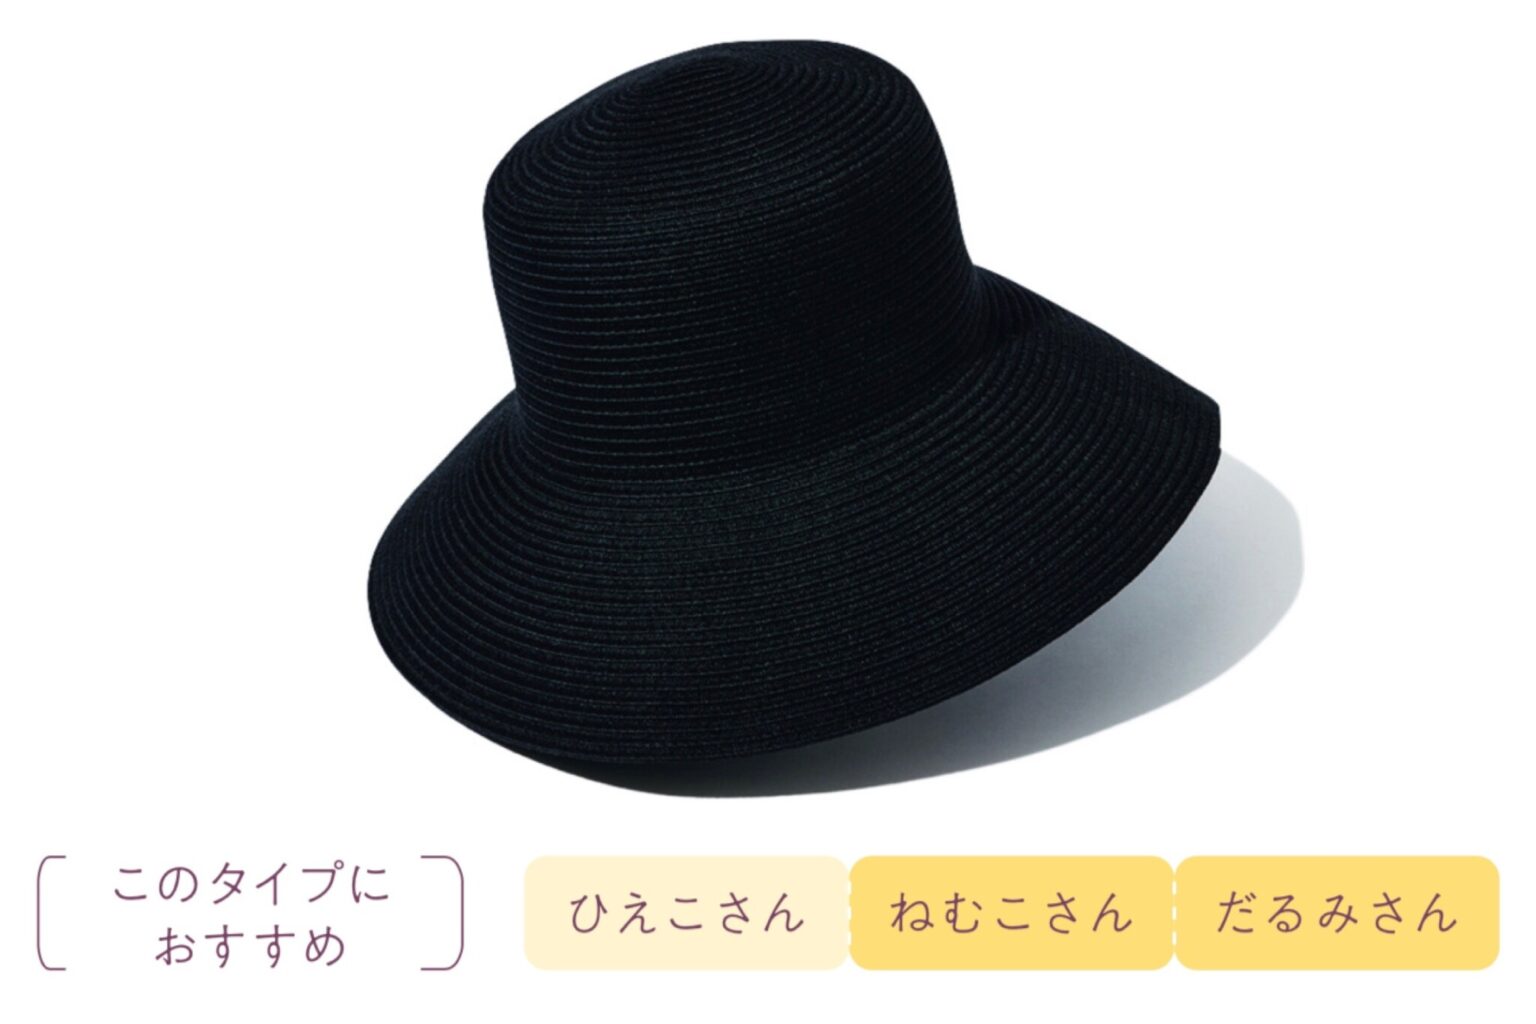 つばが7〜10cmほどある帽子なら、首元まで隠れ、顔に注ぐ日差しからも守ってくれる。〈ハンズ〉では写真の麦わら帽子3,630円のほか、UV効果のあるハット、ネックカバーのついたキャップなど、多くの種類がそろえられているから、好きな形を選んでみて。サングラスとセットで必携のアイテムだ。